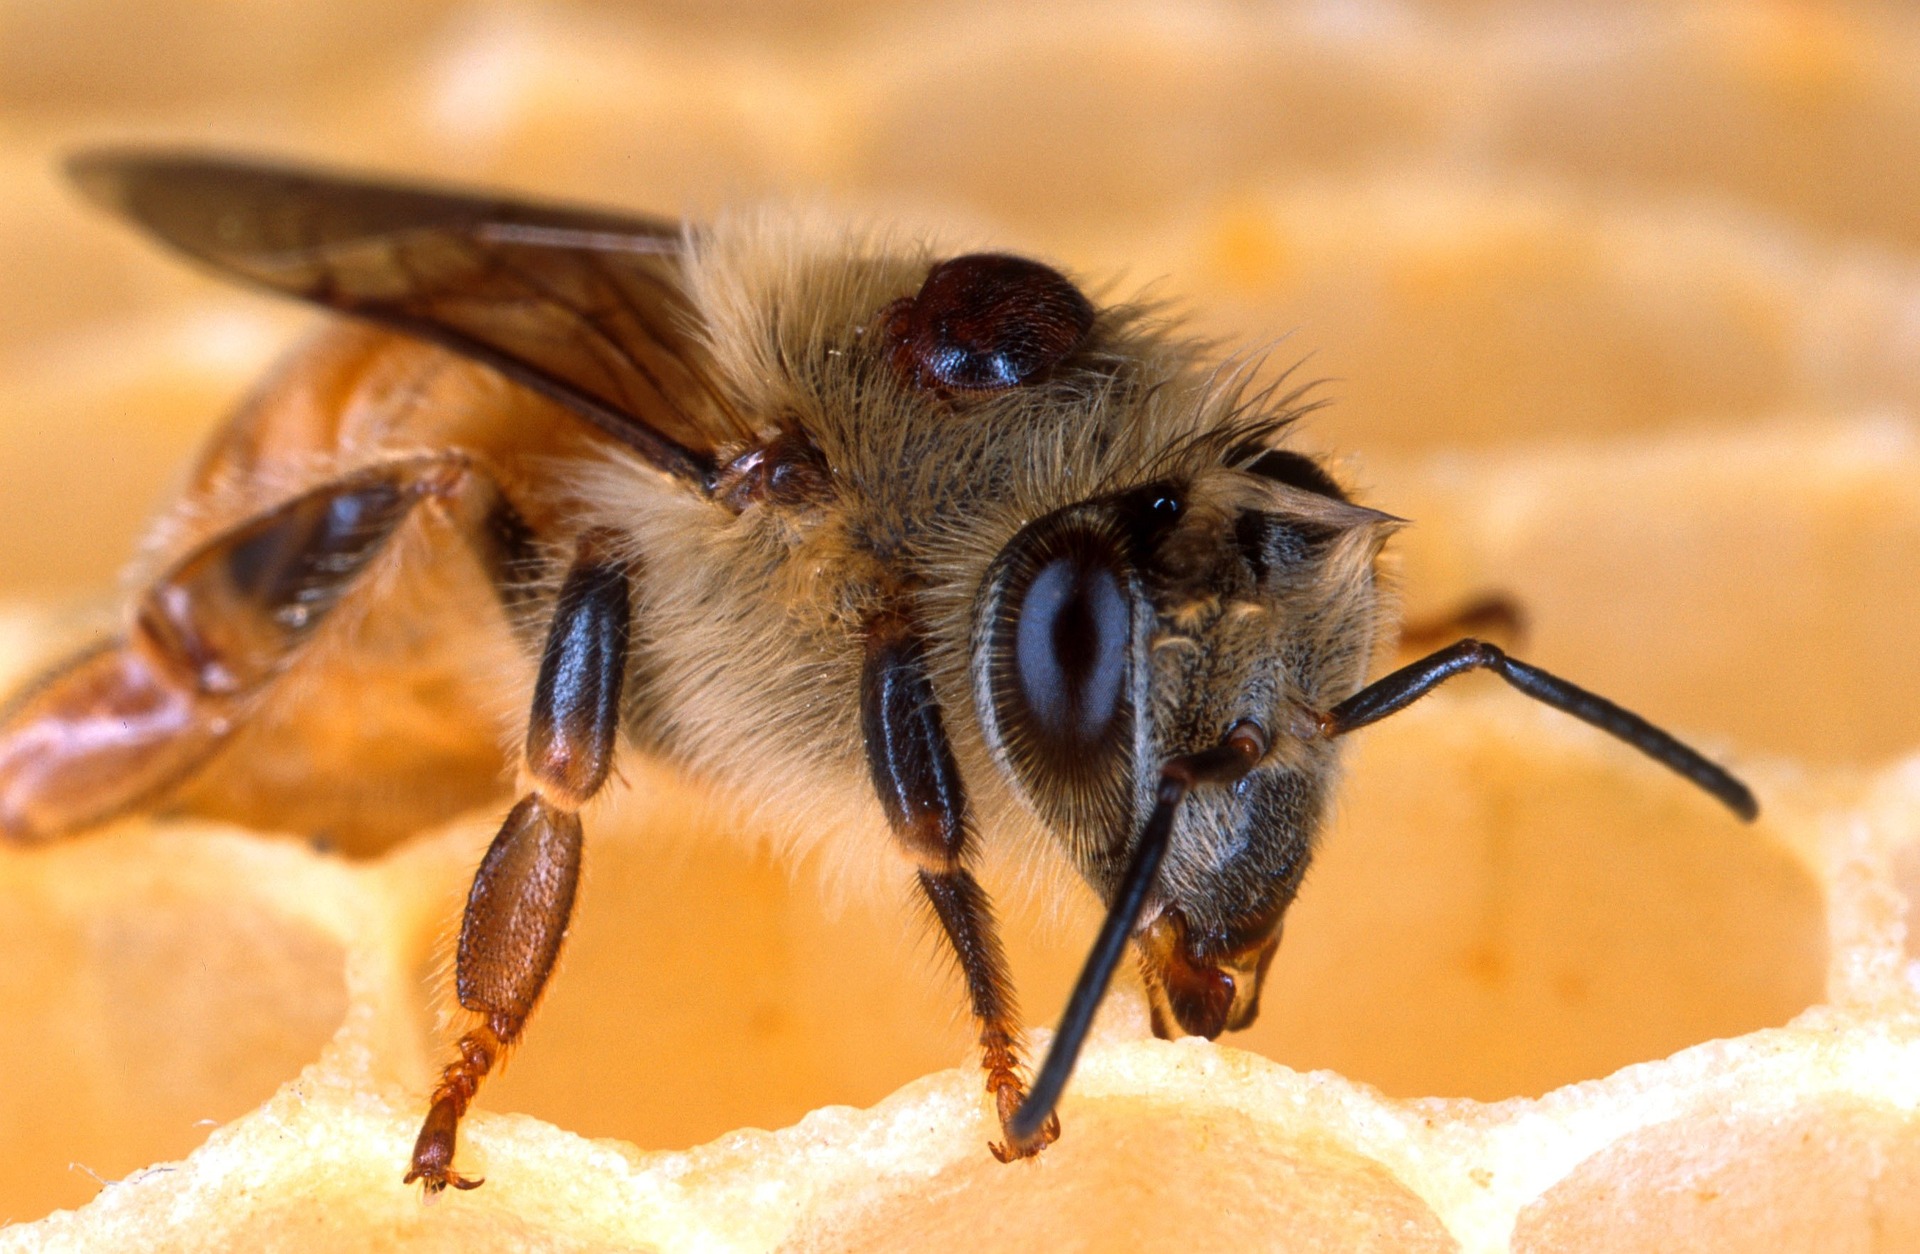 mite on honey bee